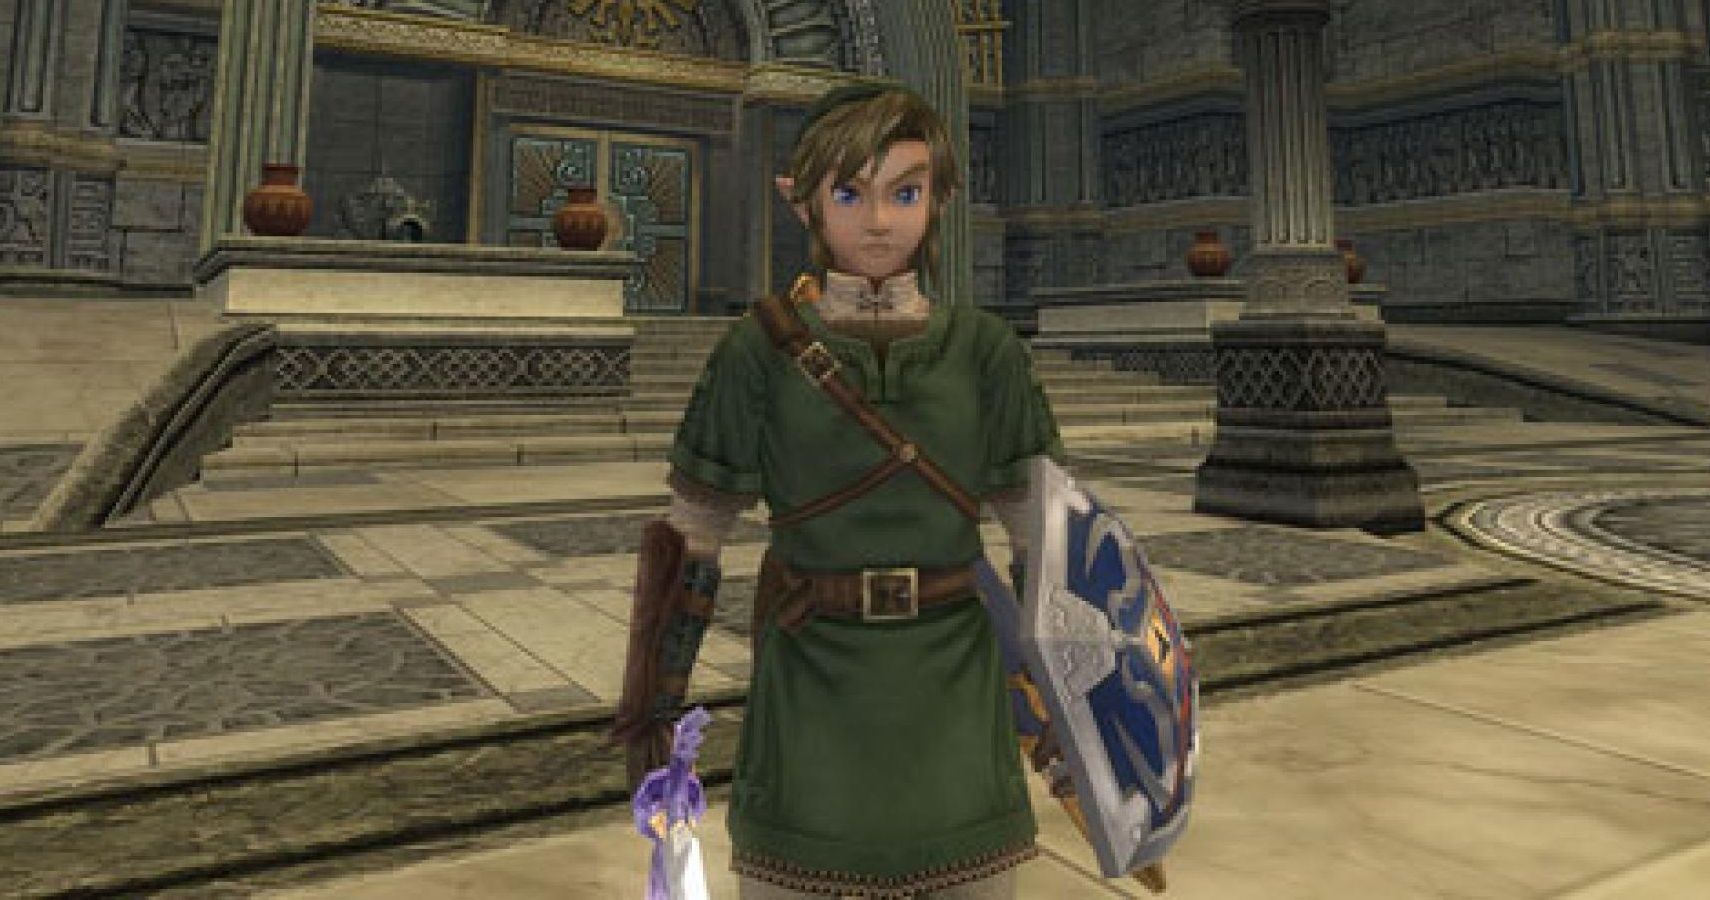 Assista ao comparativo gráfico de The Legend of Zelda: Twilight Princess no  Wii U, Wii e GameCube